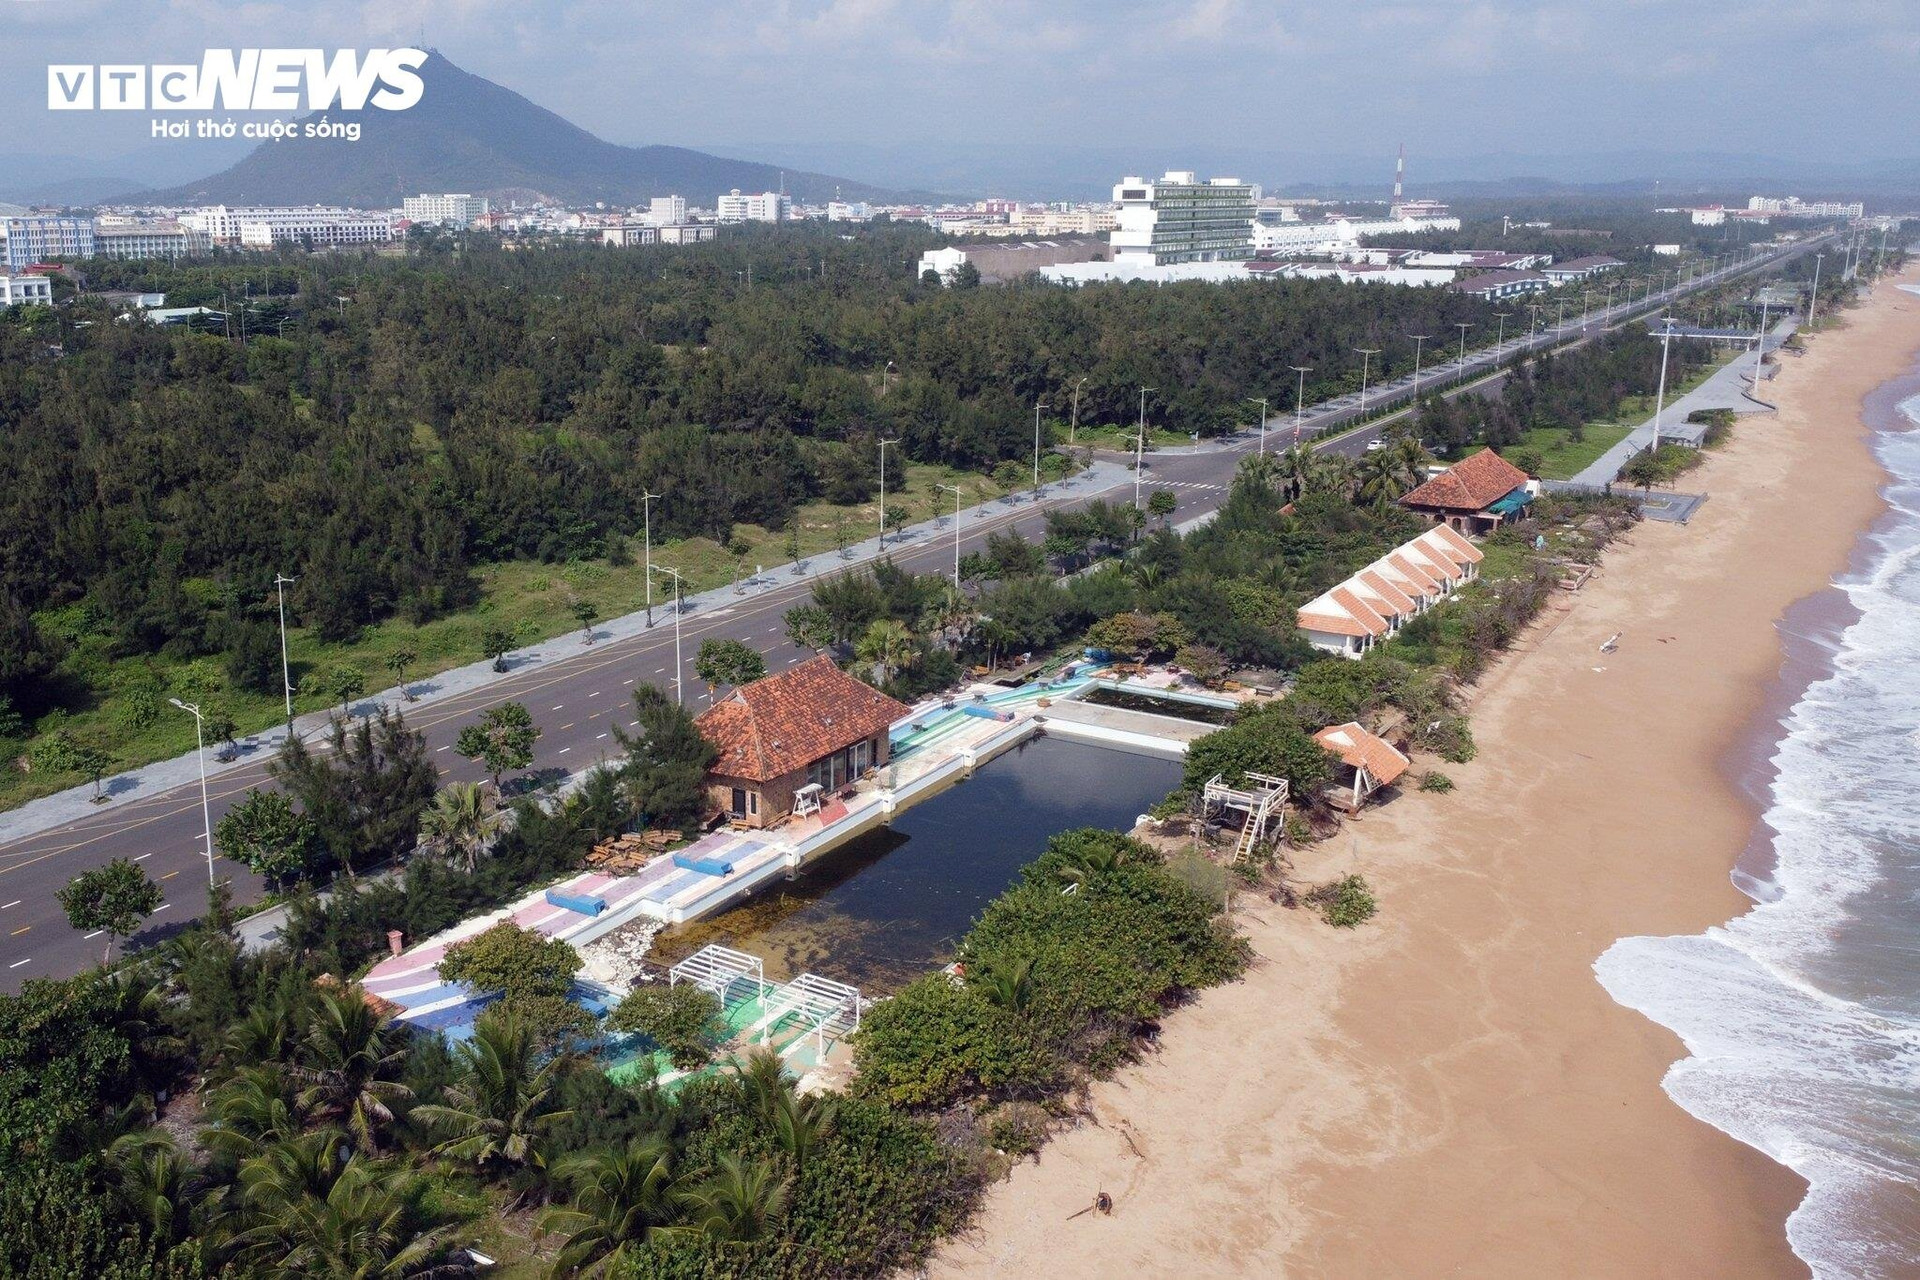 Khu resort này nằm ở vị trí đắc địa, ngay bờ biển, gần tháp Nghinh Phong thu hút nhiều khách du lịch ghé thăm.